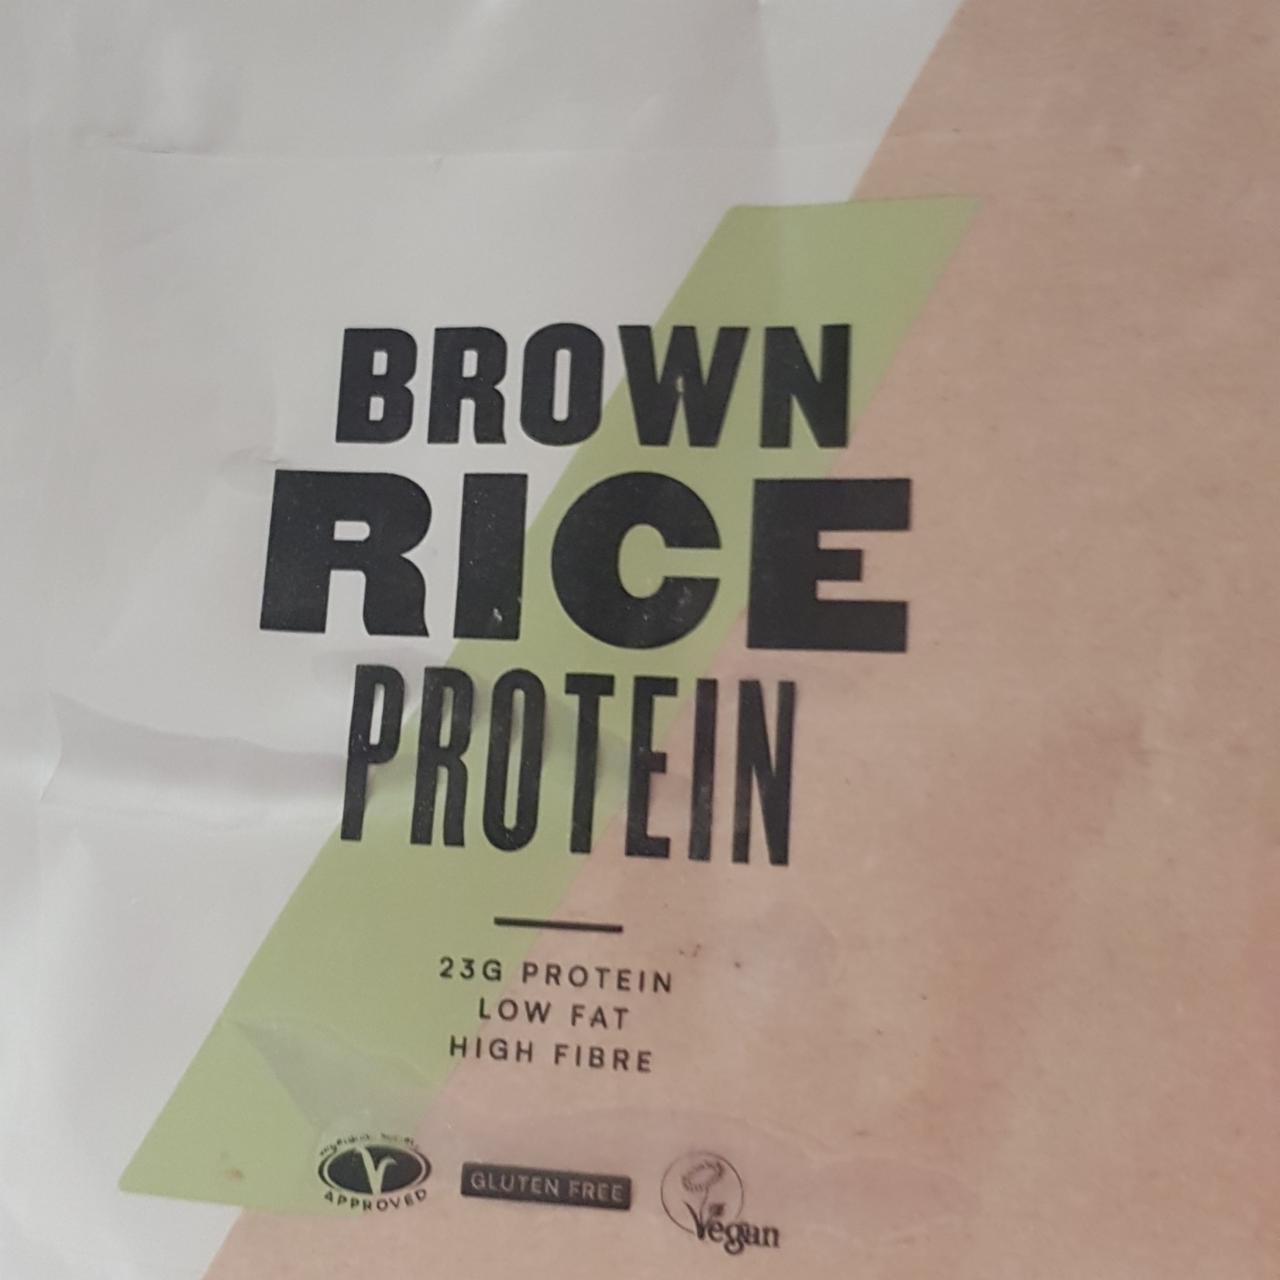 Képek - Brown rice protein MyVegan